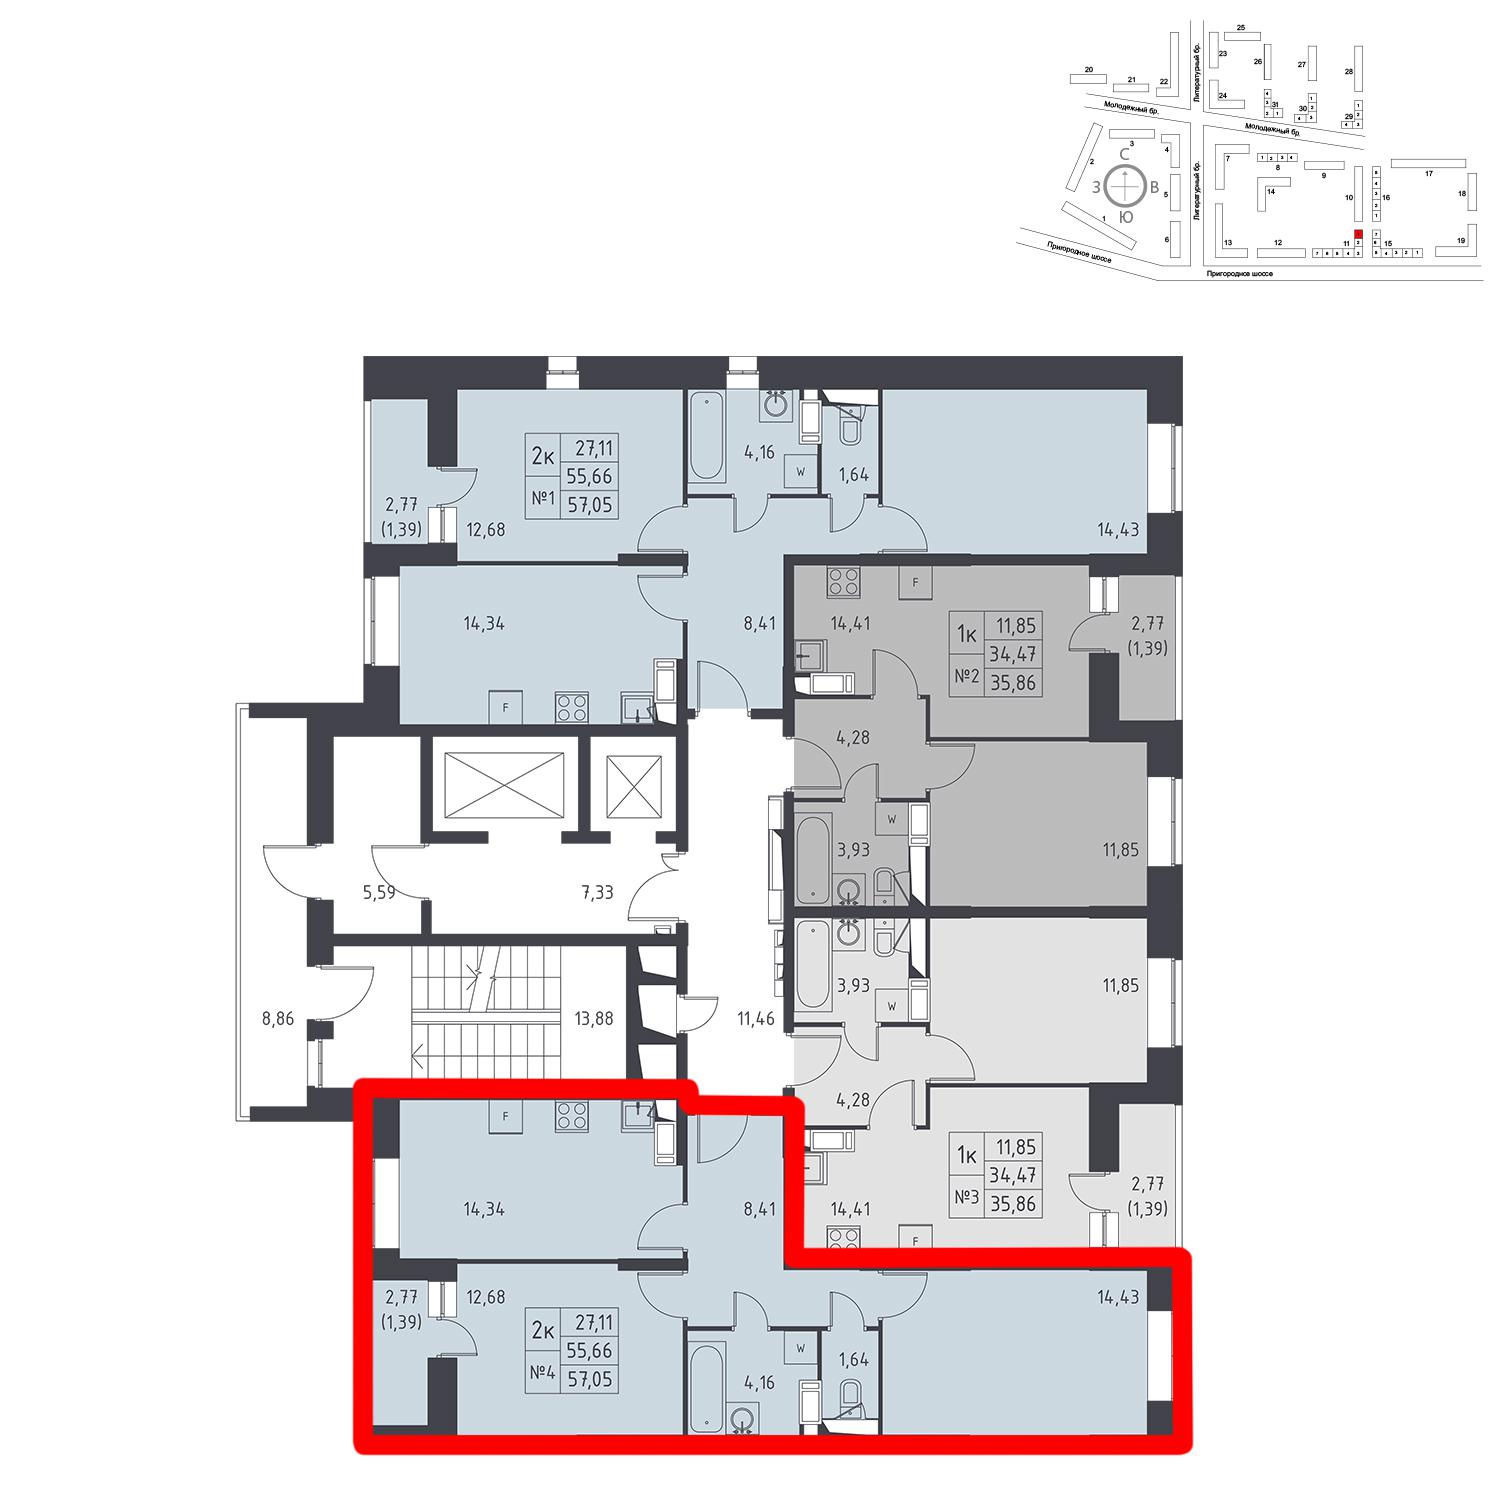 Продаётся 2-комнатная квартира в новостройке 57.1 кв.м. этаж 12/17 за 0 руб 